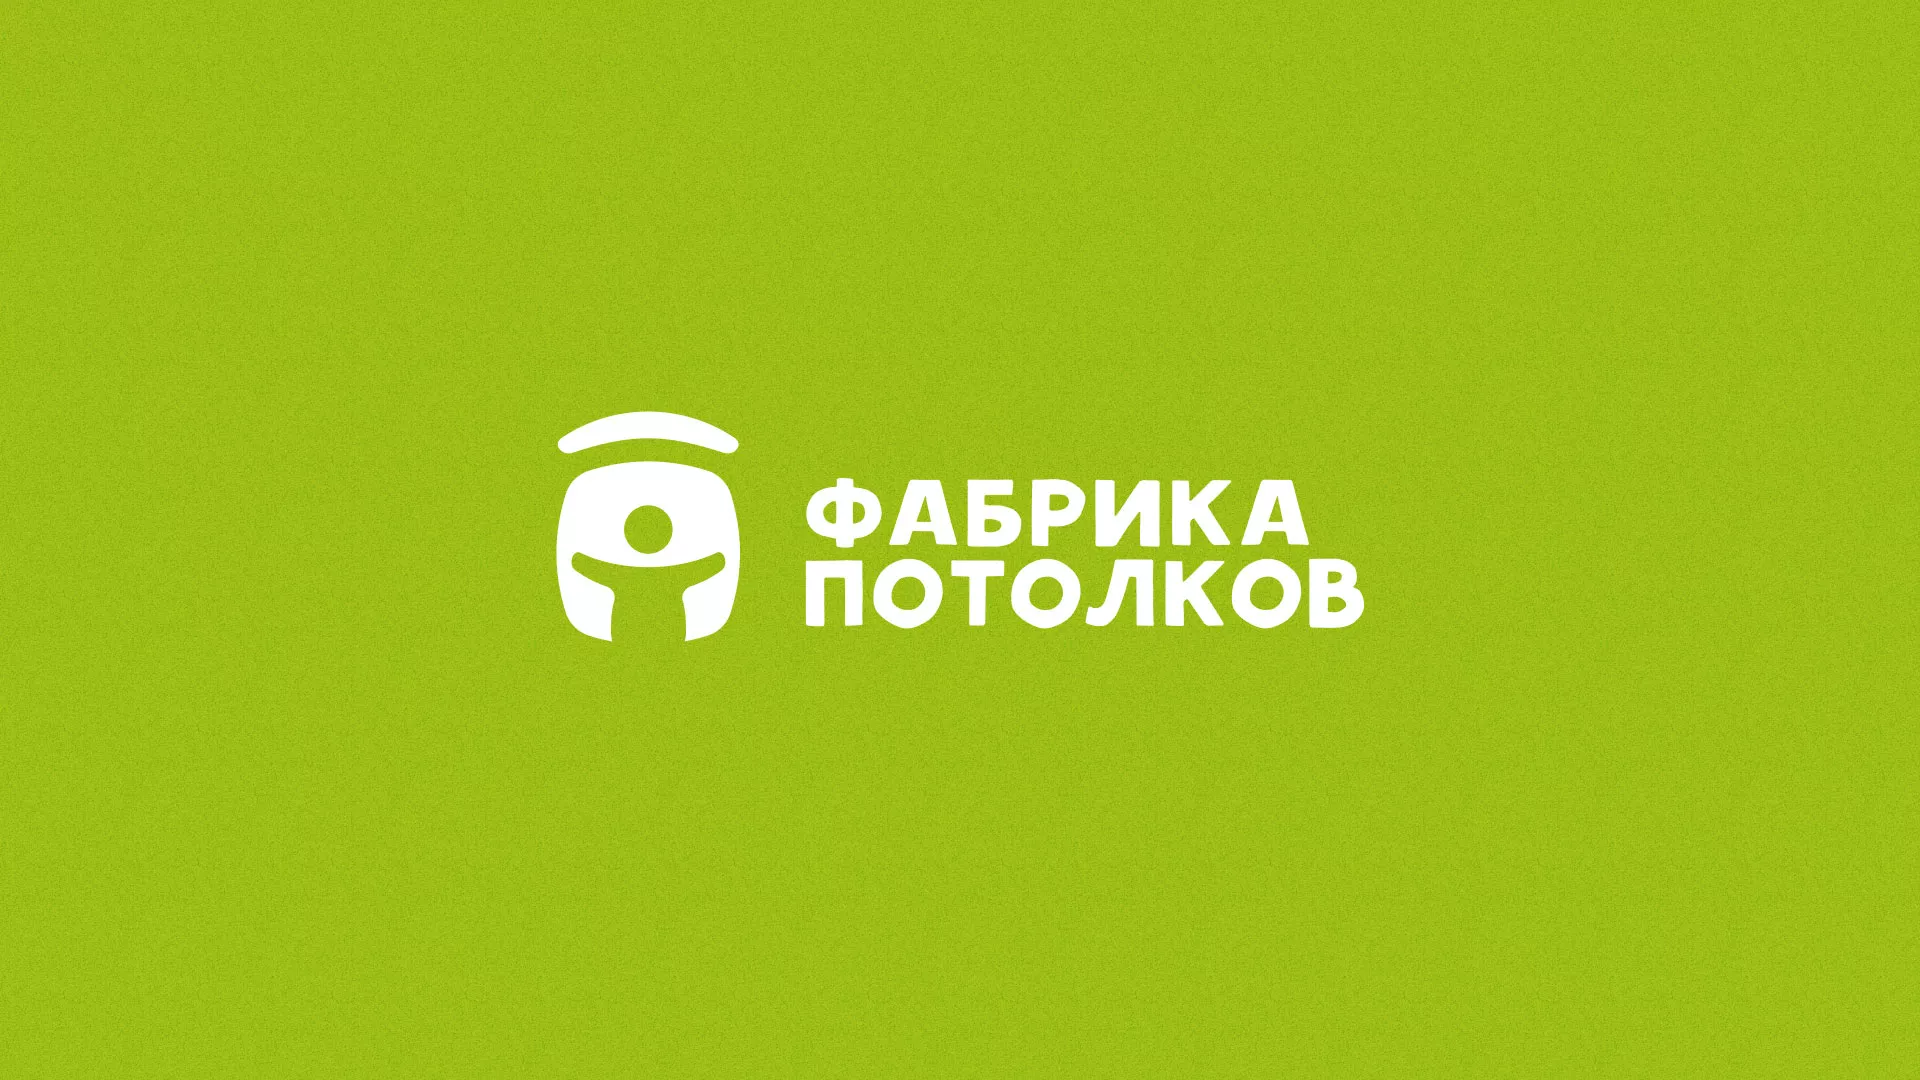 Разработка логотипа для производства натяжных потолков в Заполярном